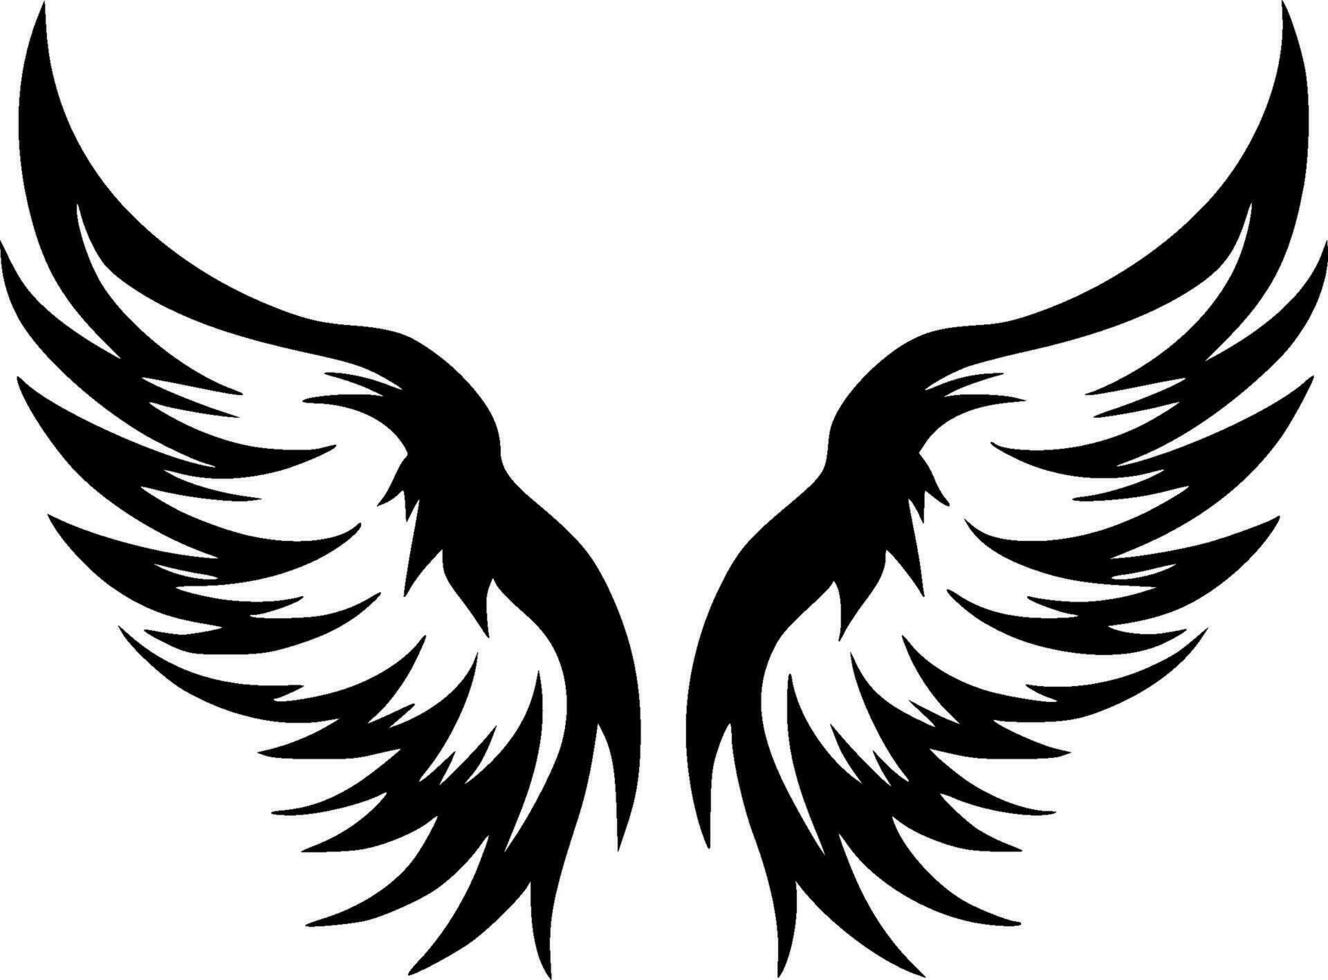 ángel alas - minimalista y plano logo - vector ilustración